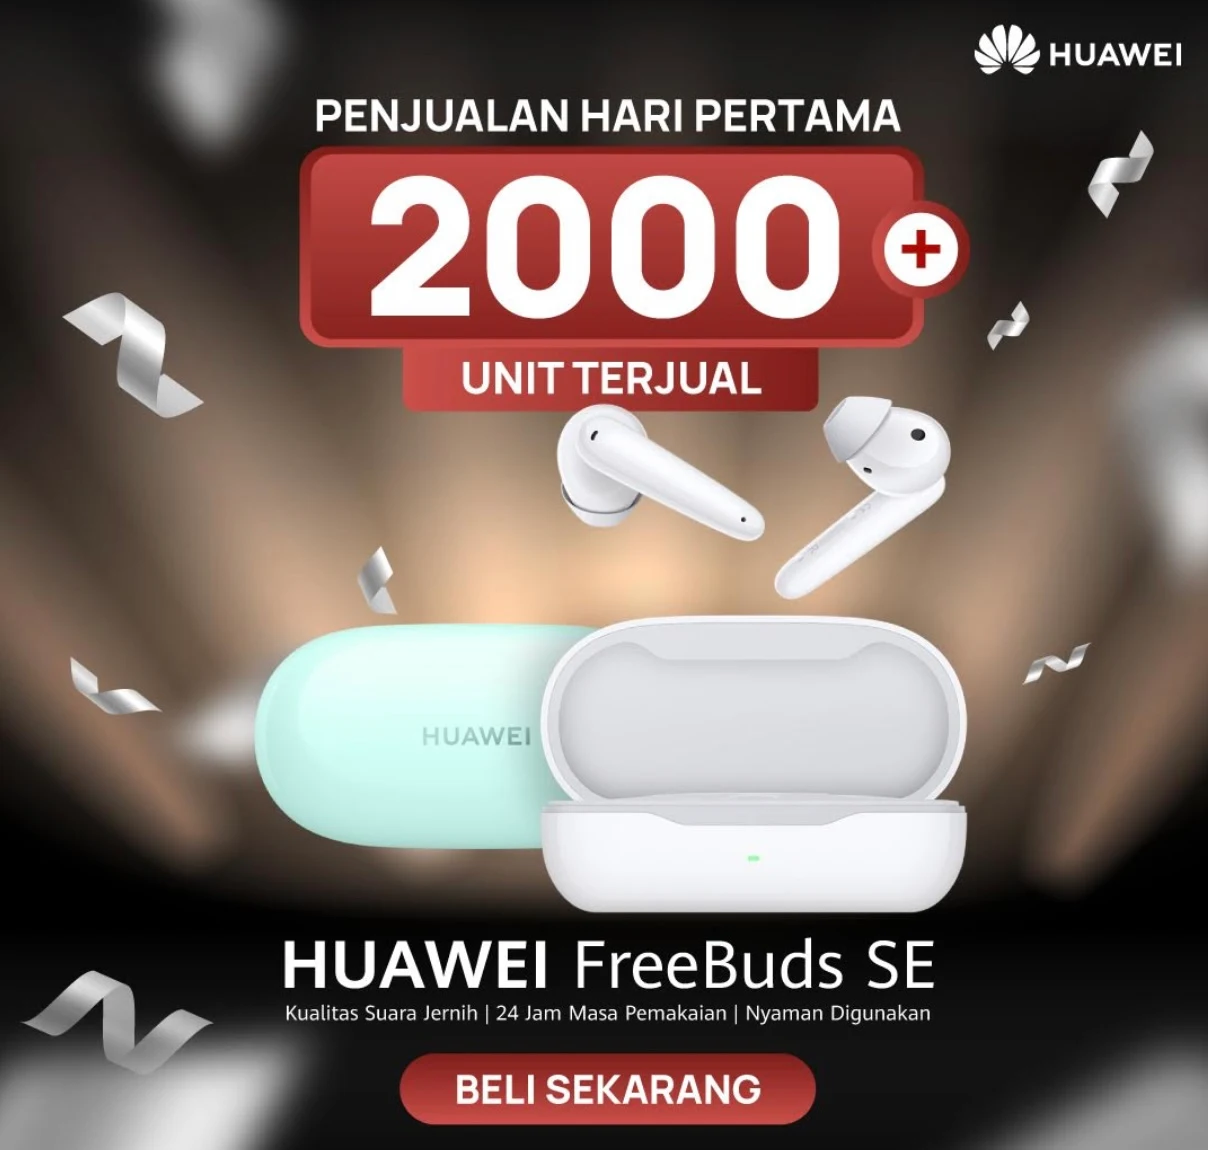 Huawei FreeBuds SE Jadi TWS Entry-Level yang Menarik, Terjual 2000 Unit di Hari Pertama